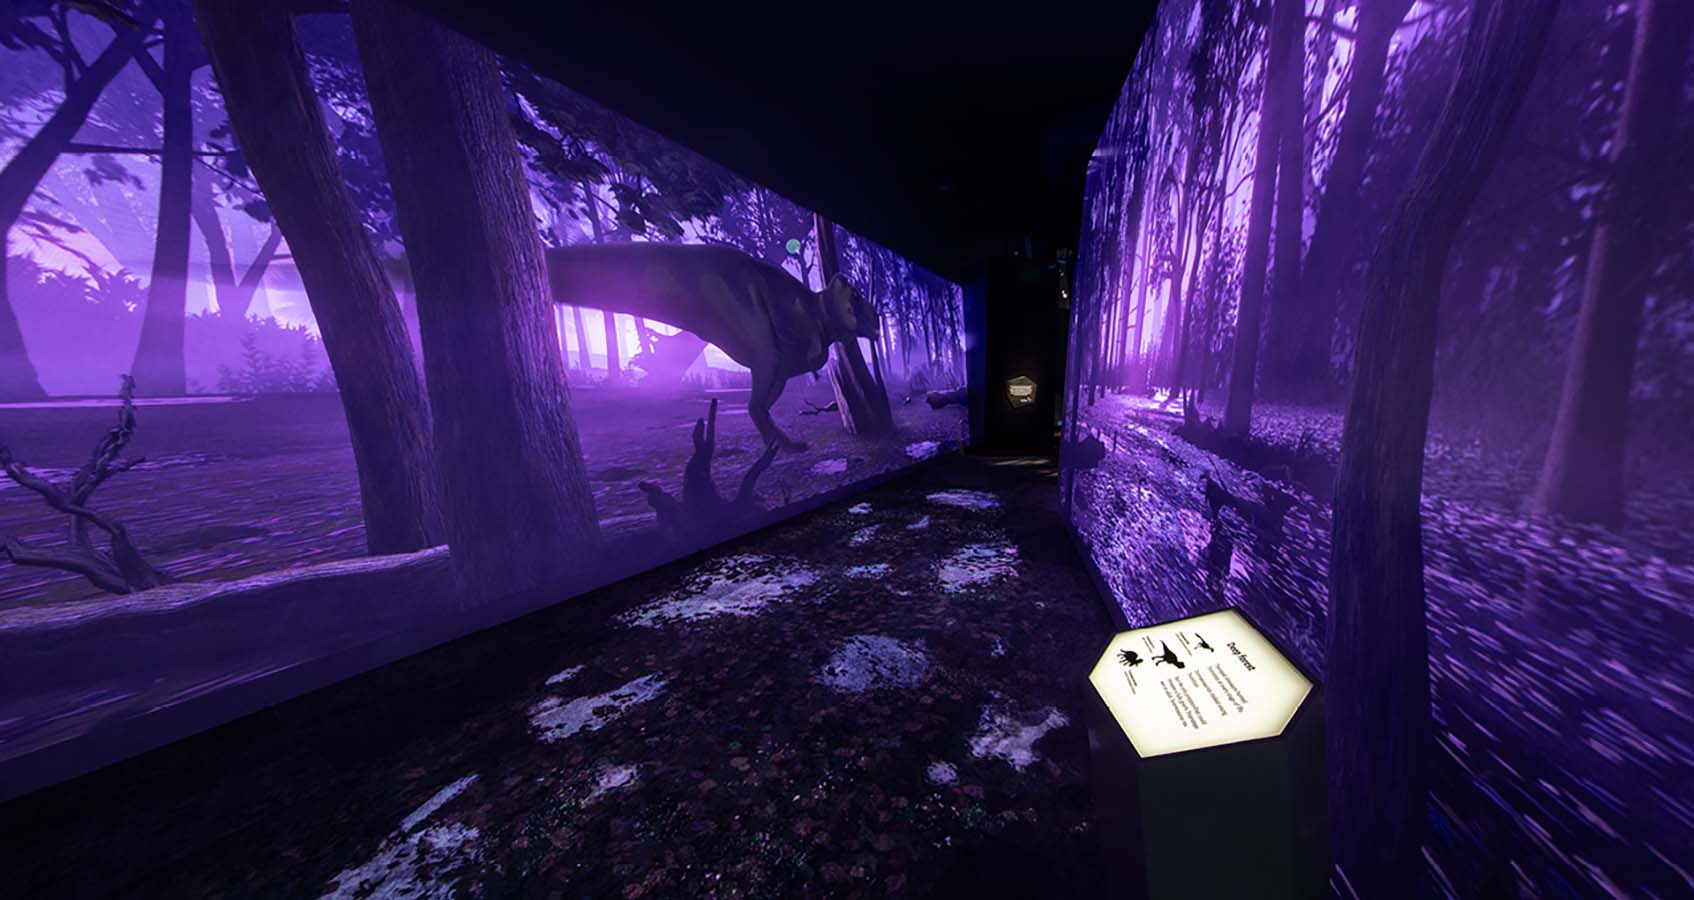 Purple lit exhibition space